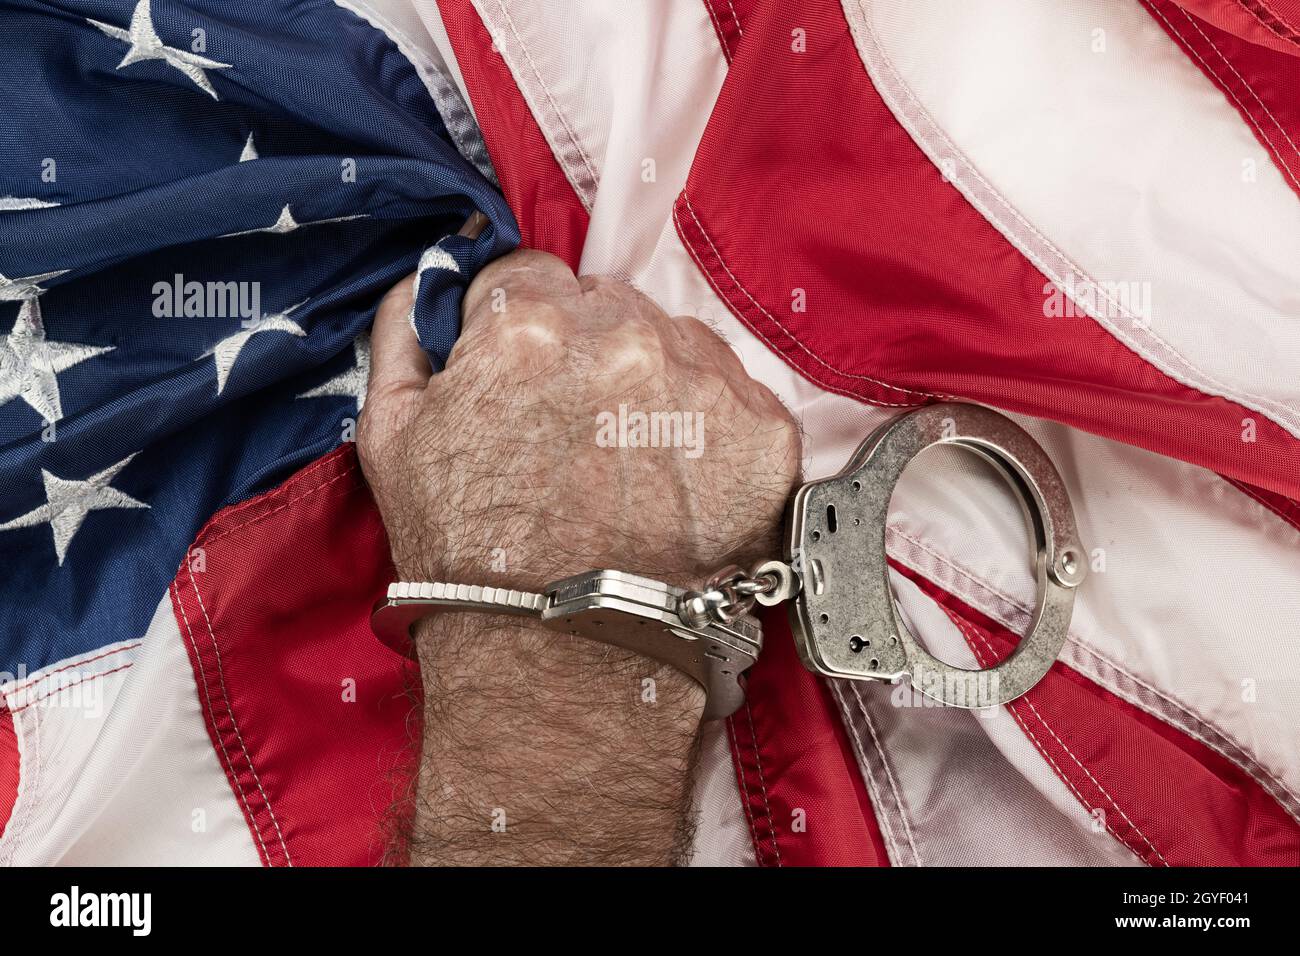 Ein Mann in Handschellen greift frustriert und wütend die amerikanische Flagge, während Unterdrückung und Bürokratie seine Freiheit verhindern. Stockfoto